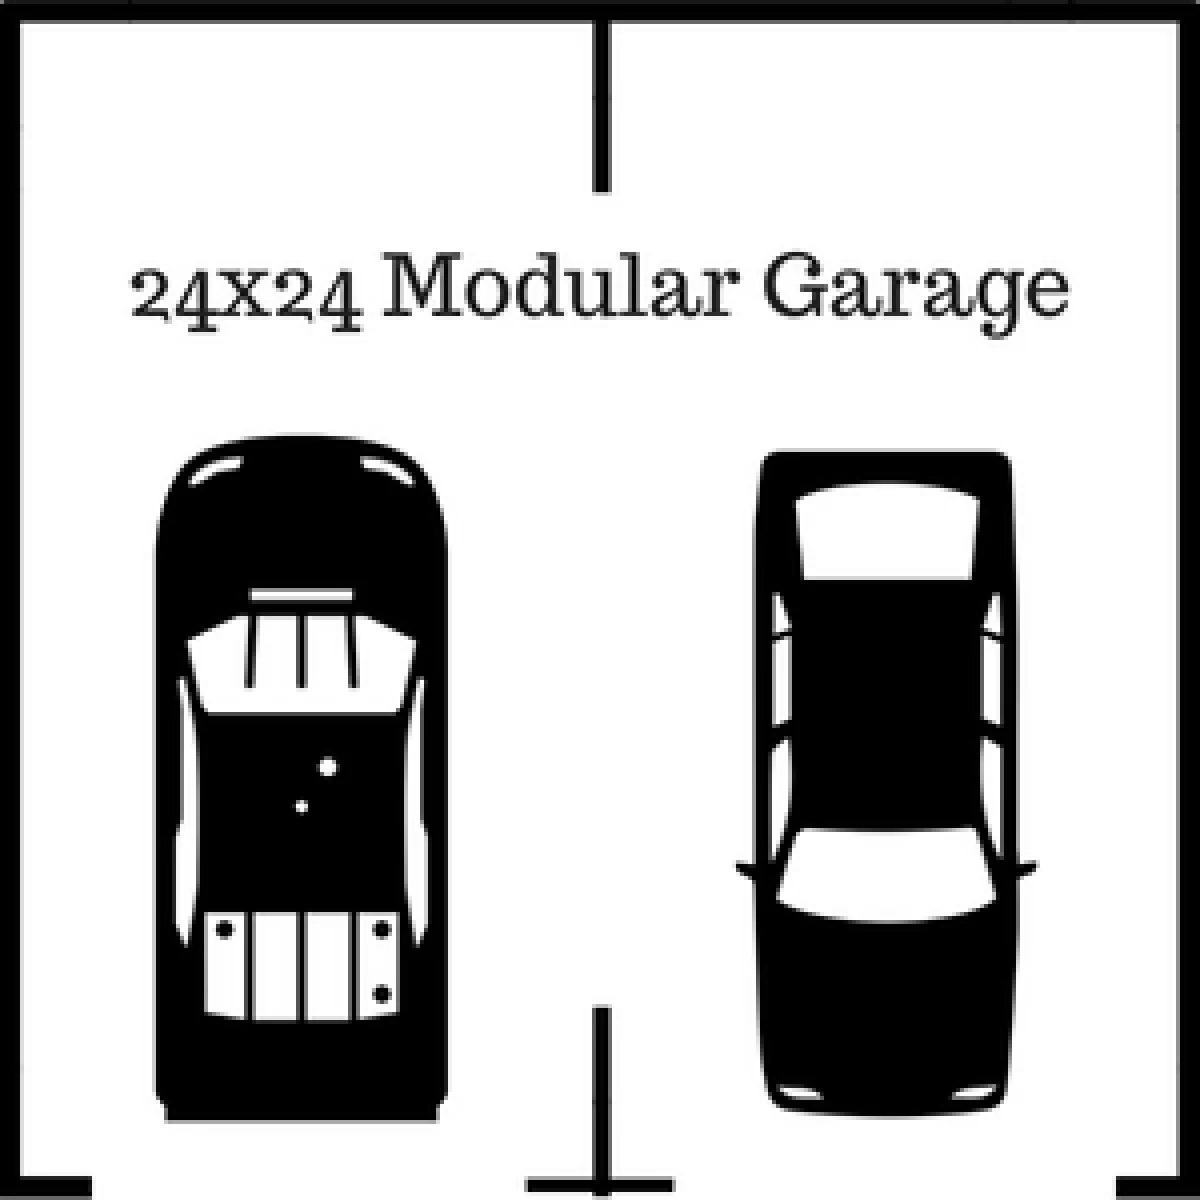 2 car garage dimensions 24x24 garage